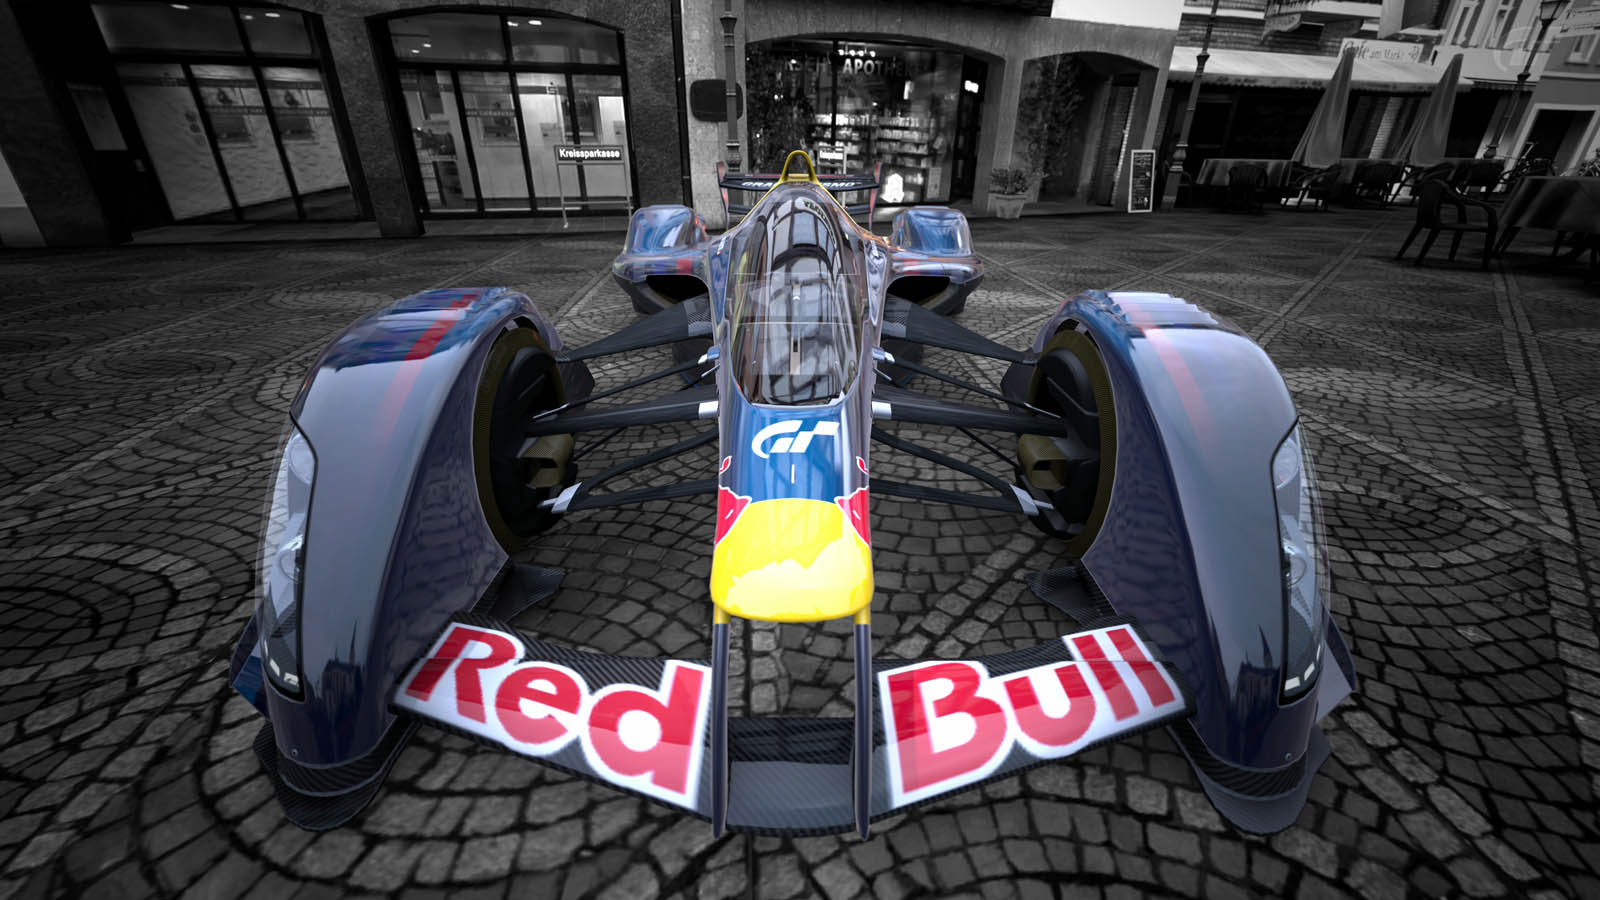 Red Bull X2010: Galerie de photos, informations complètes sur le modèle...